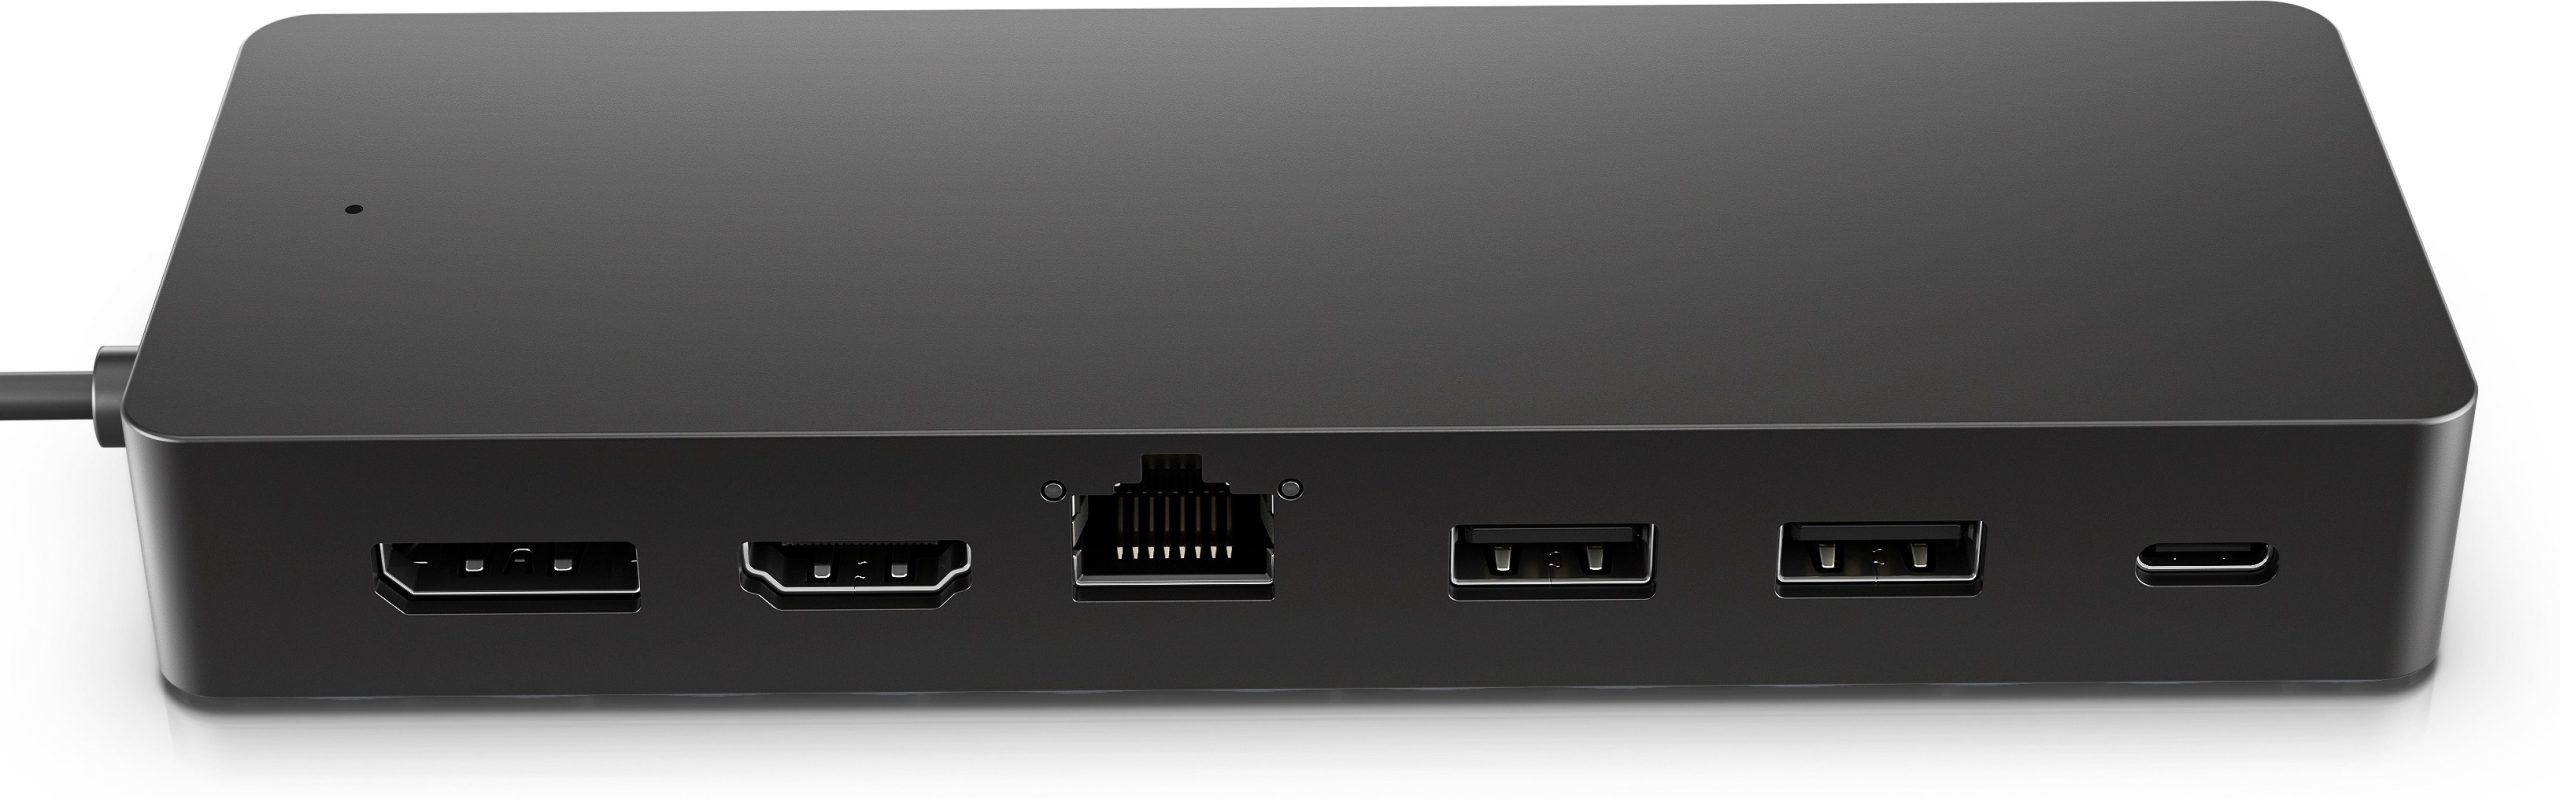 Hub multipuerto USB-C universal HP 50H55AA conexión de datos - video o red[4]. 1 HDMI 2.0